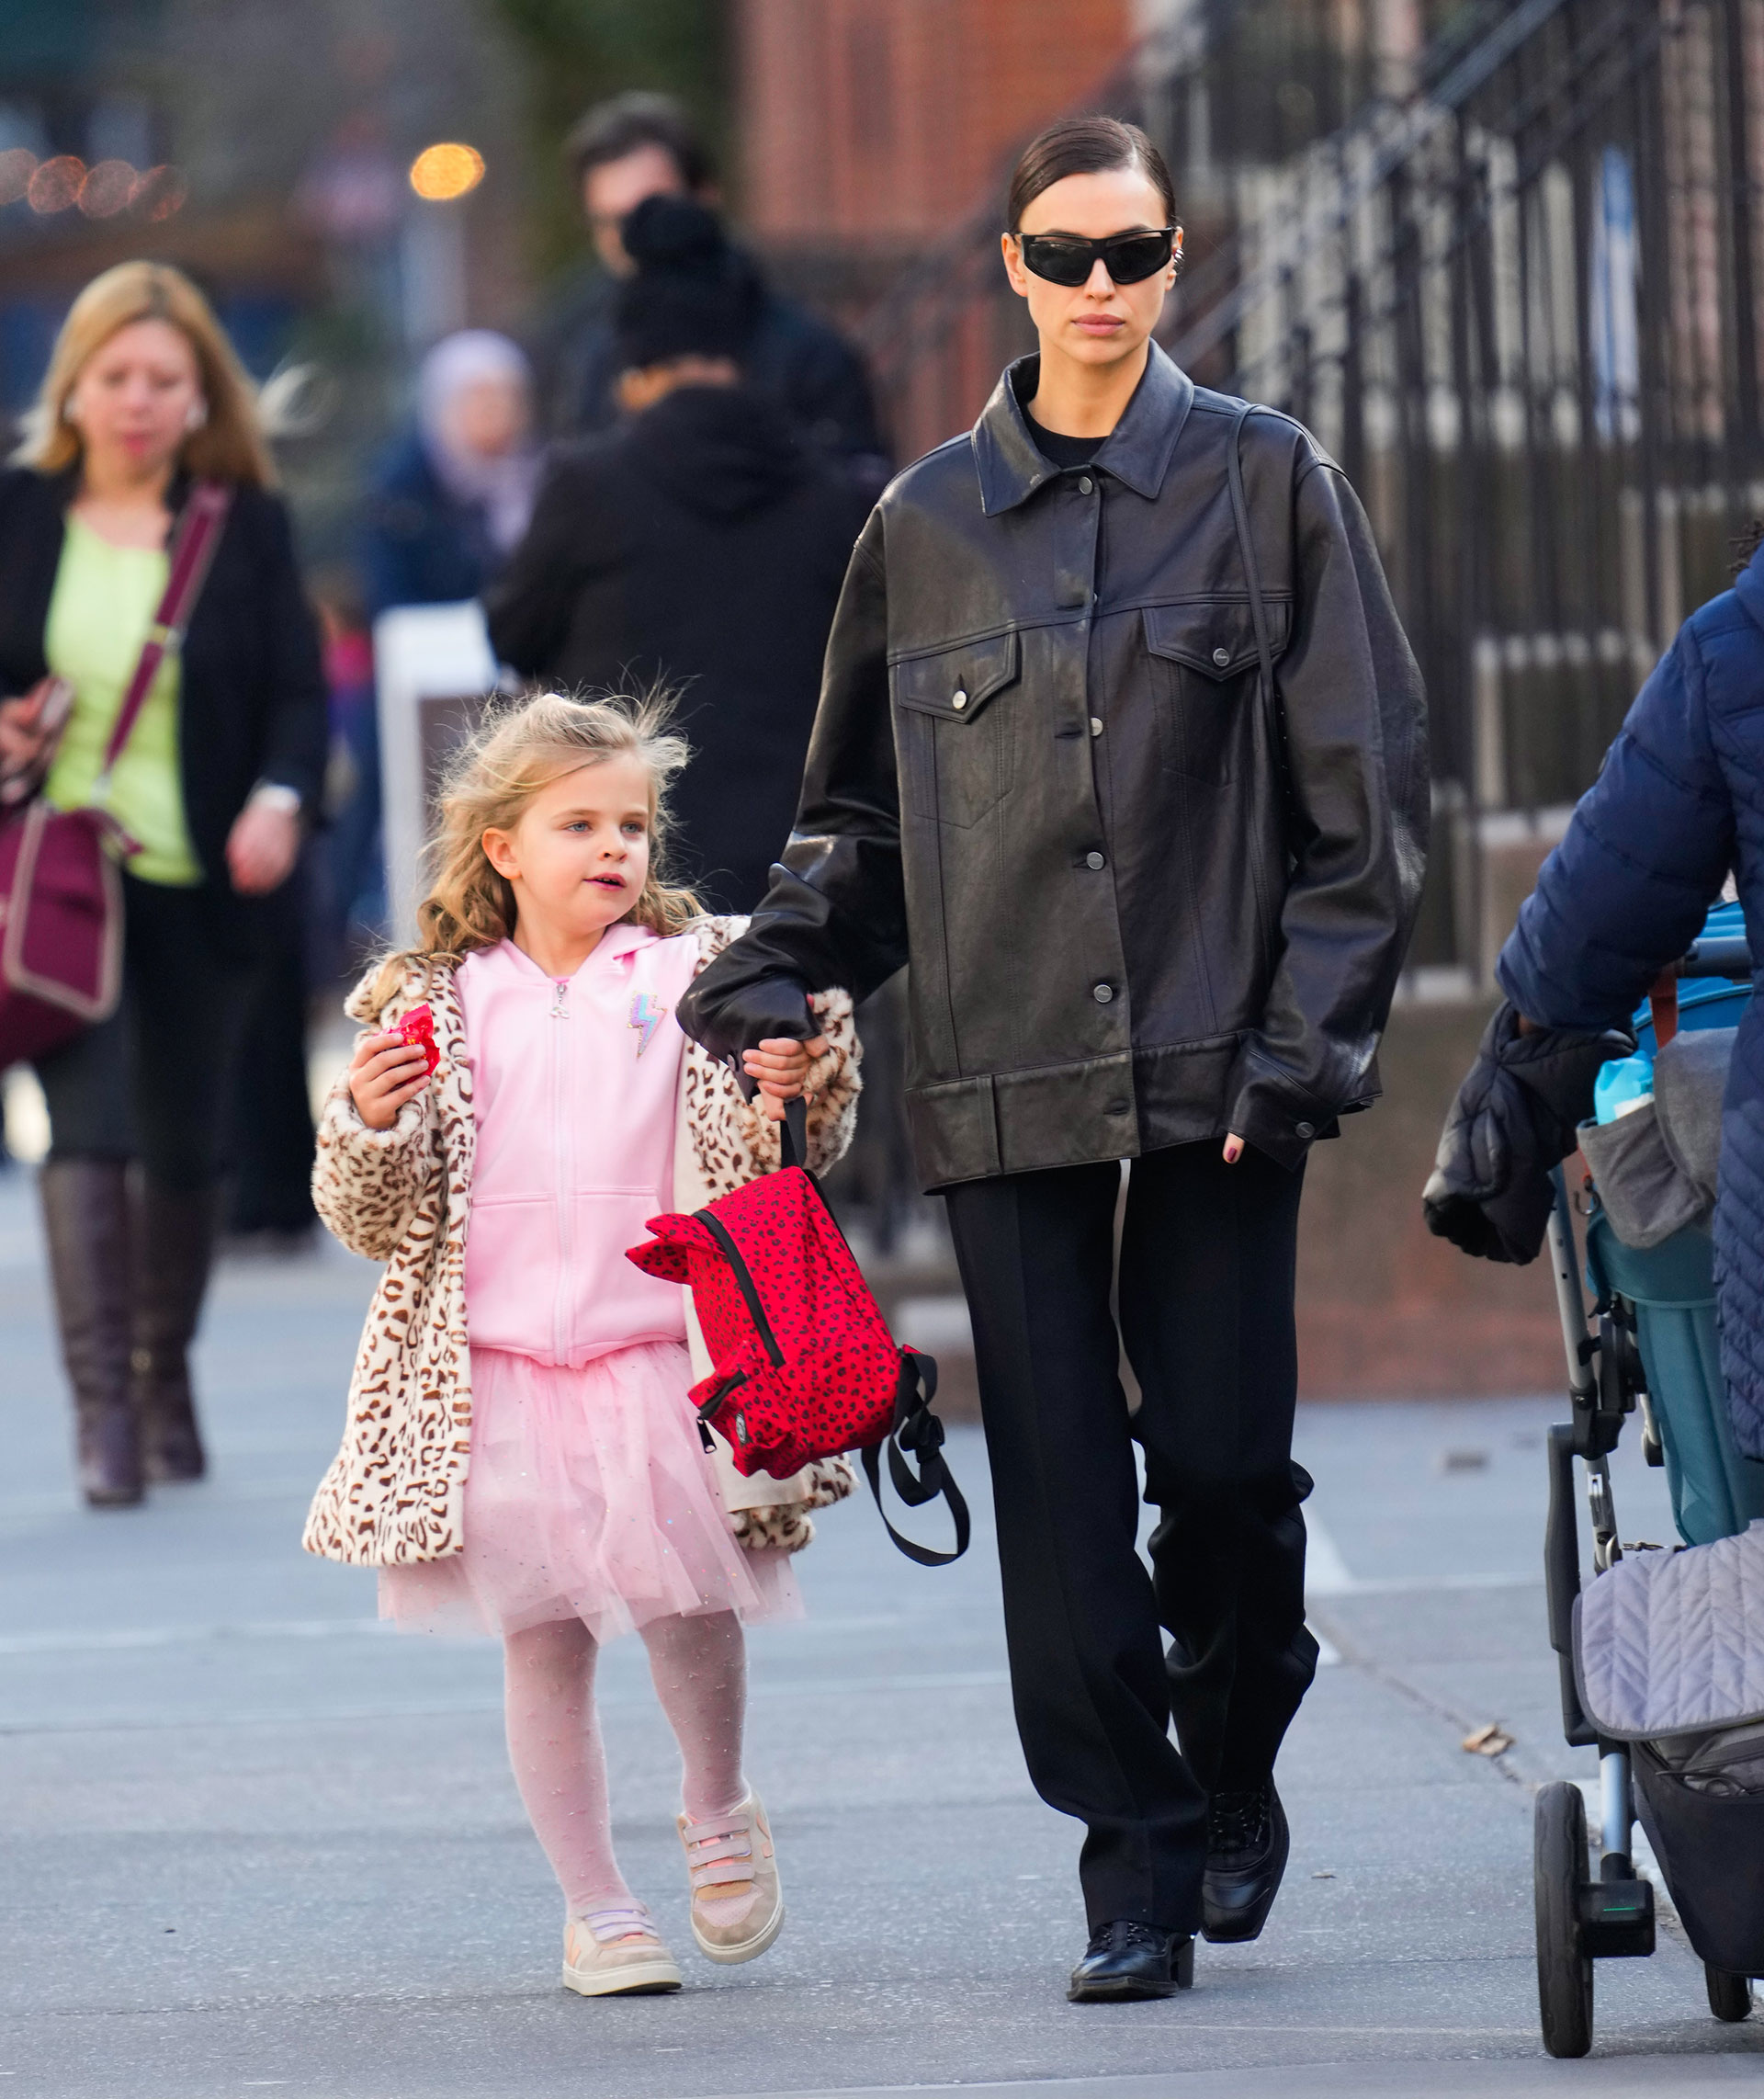 Irina Shayk enfrentou o frio e foi passear com a filha Lea pelas ruas de seu bairro em Nova York.  Para isso, ela usou um look total black de calça e jaqueta de couro que completou com óculos de sol, enquanto a menina usou um look rosa com casaco animal print.